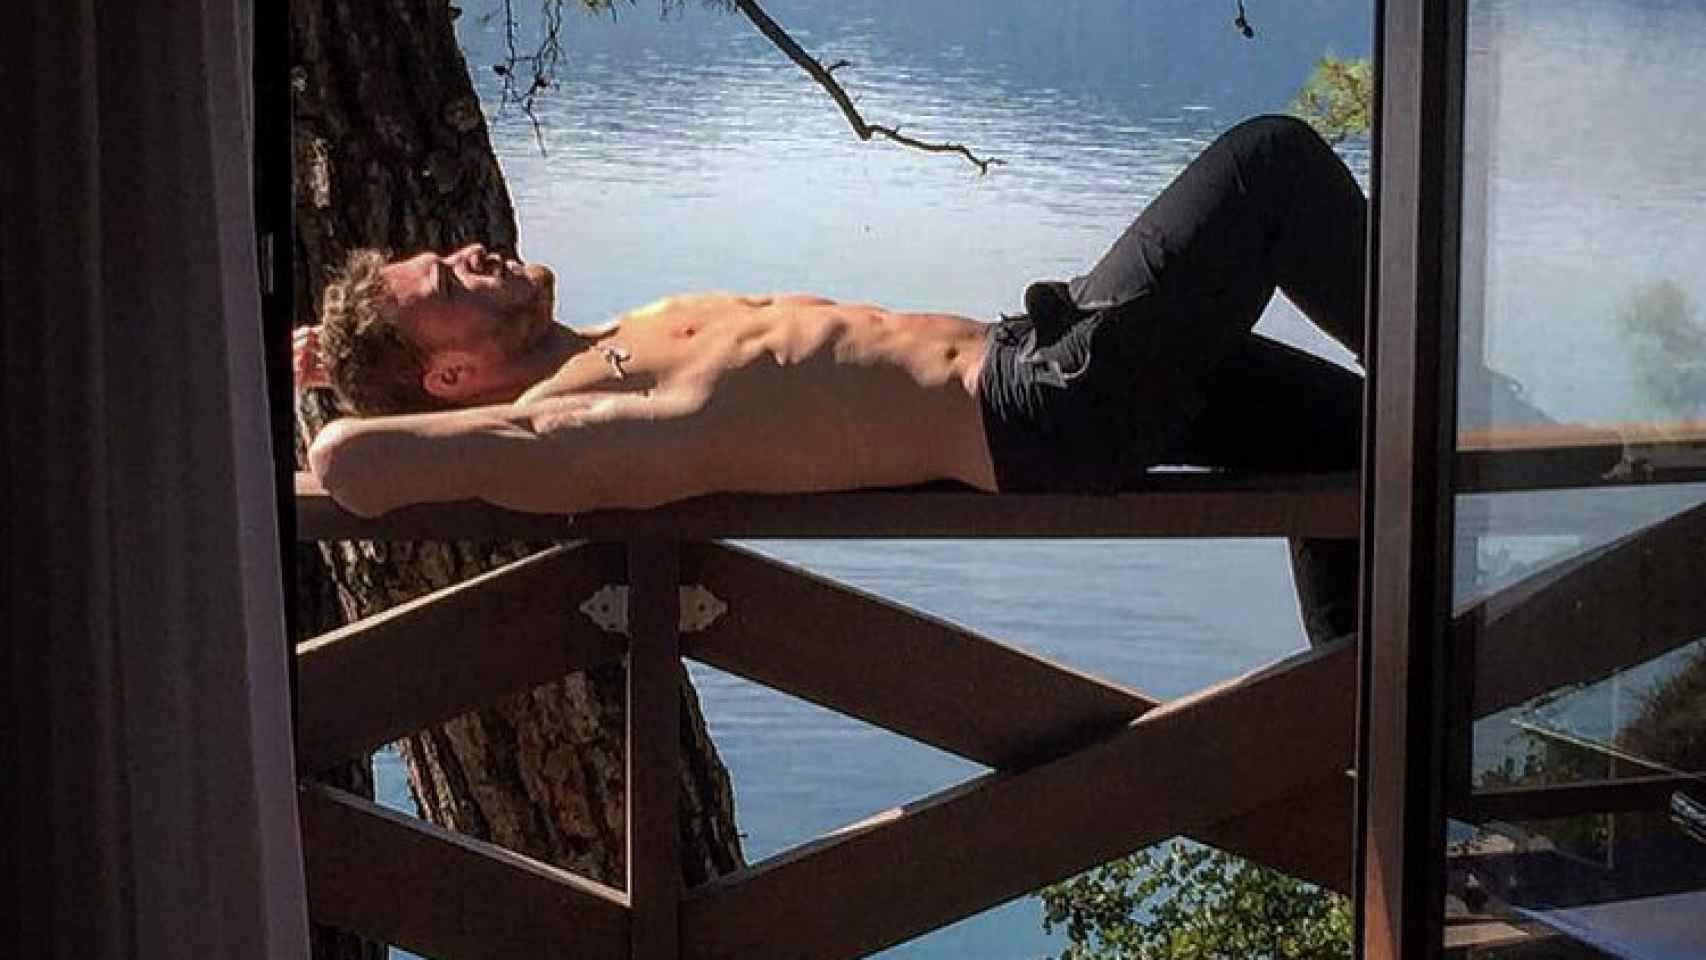 El actor en una imagen de sus redes sociales disfrutando de un momento de relax.